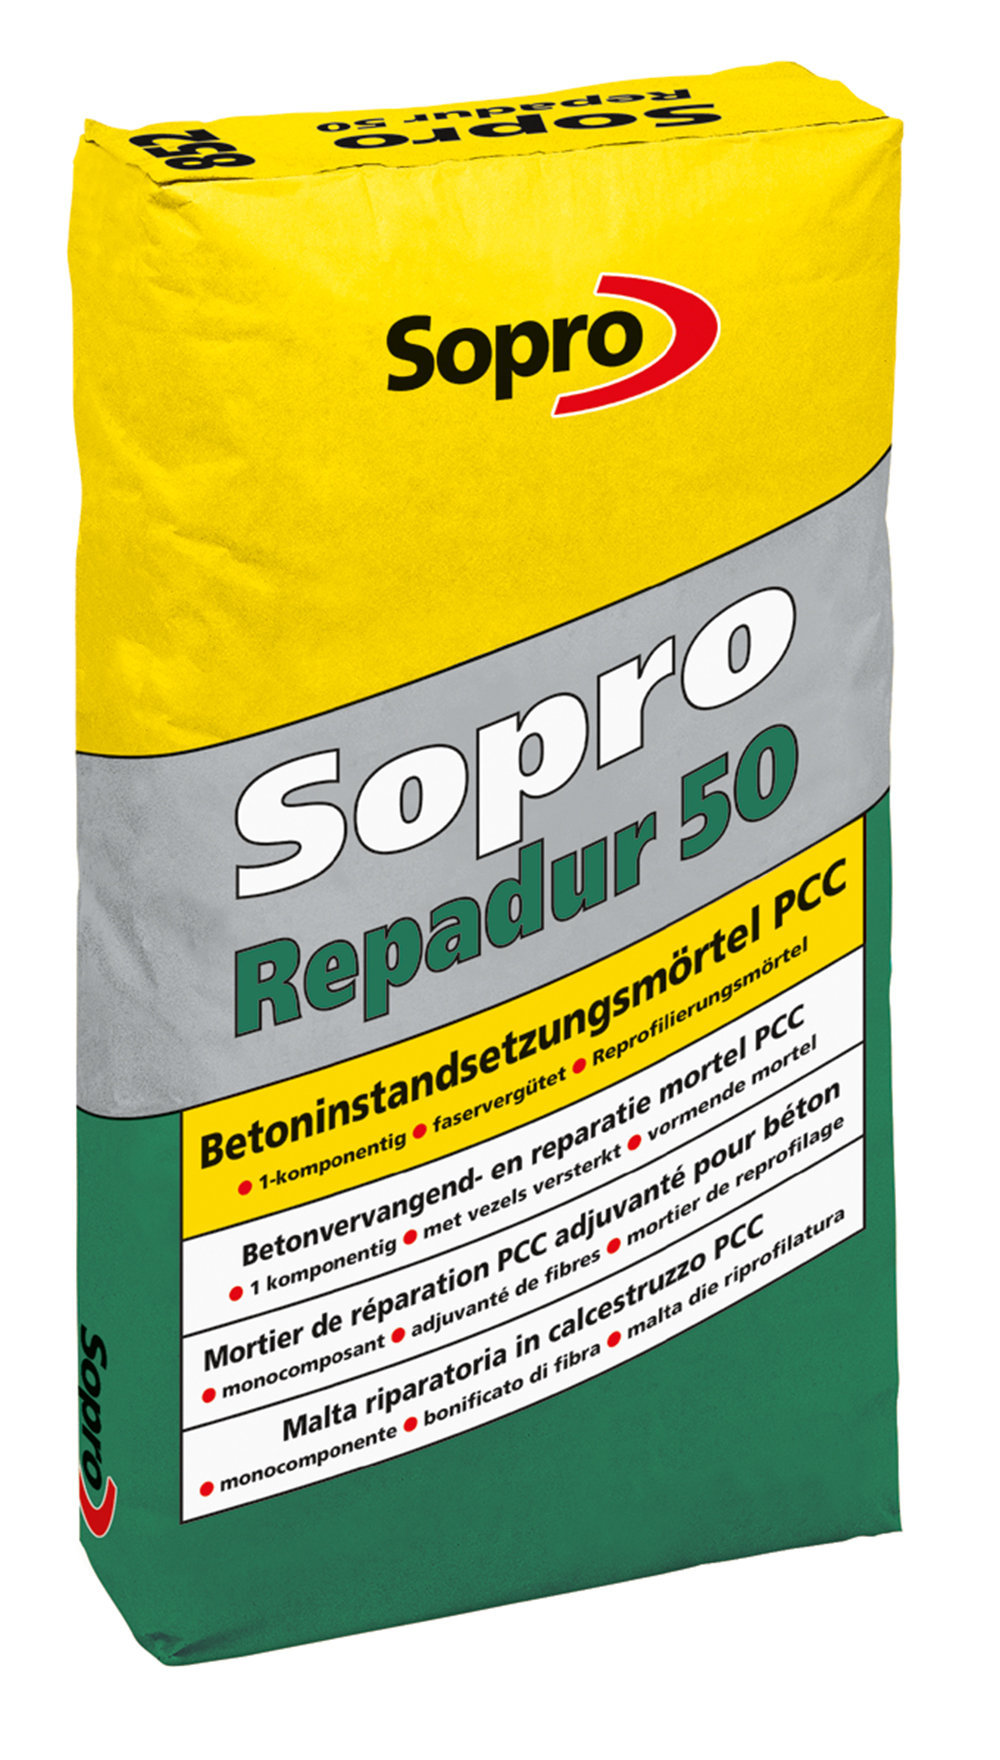 Sopro Repadur 50 Betoninstandsetzungsmörtel PCC